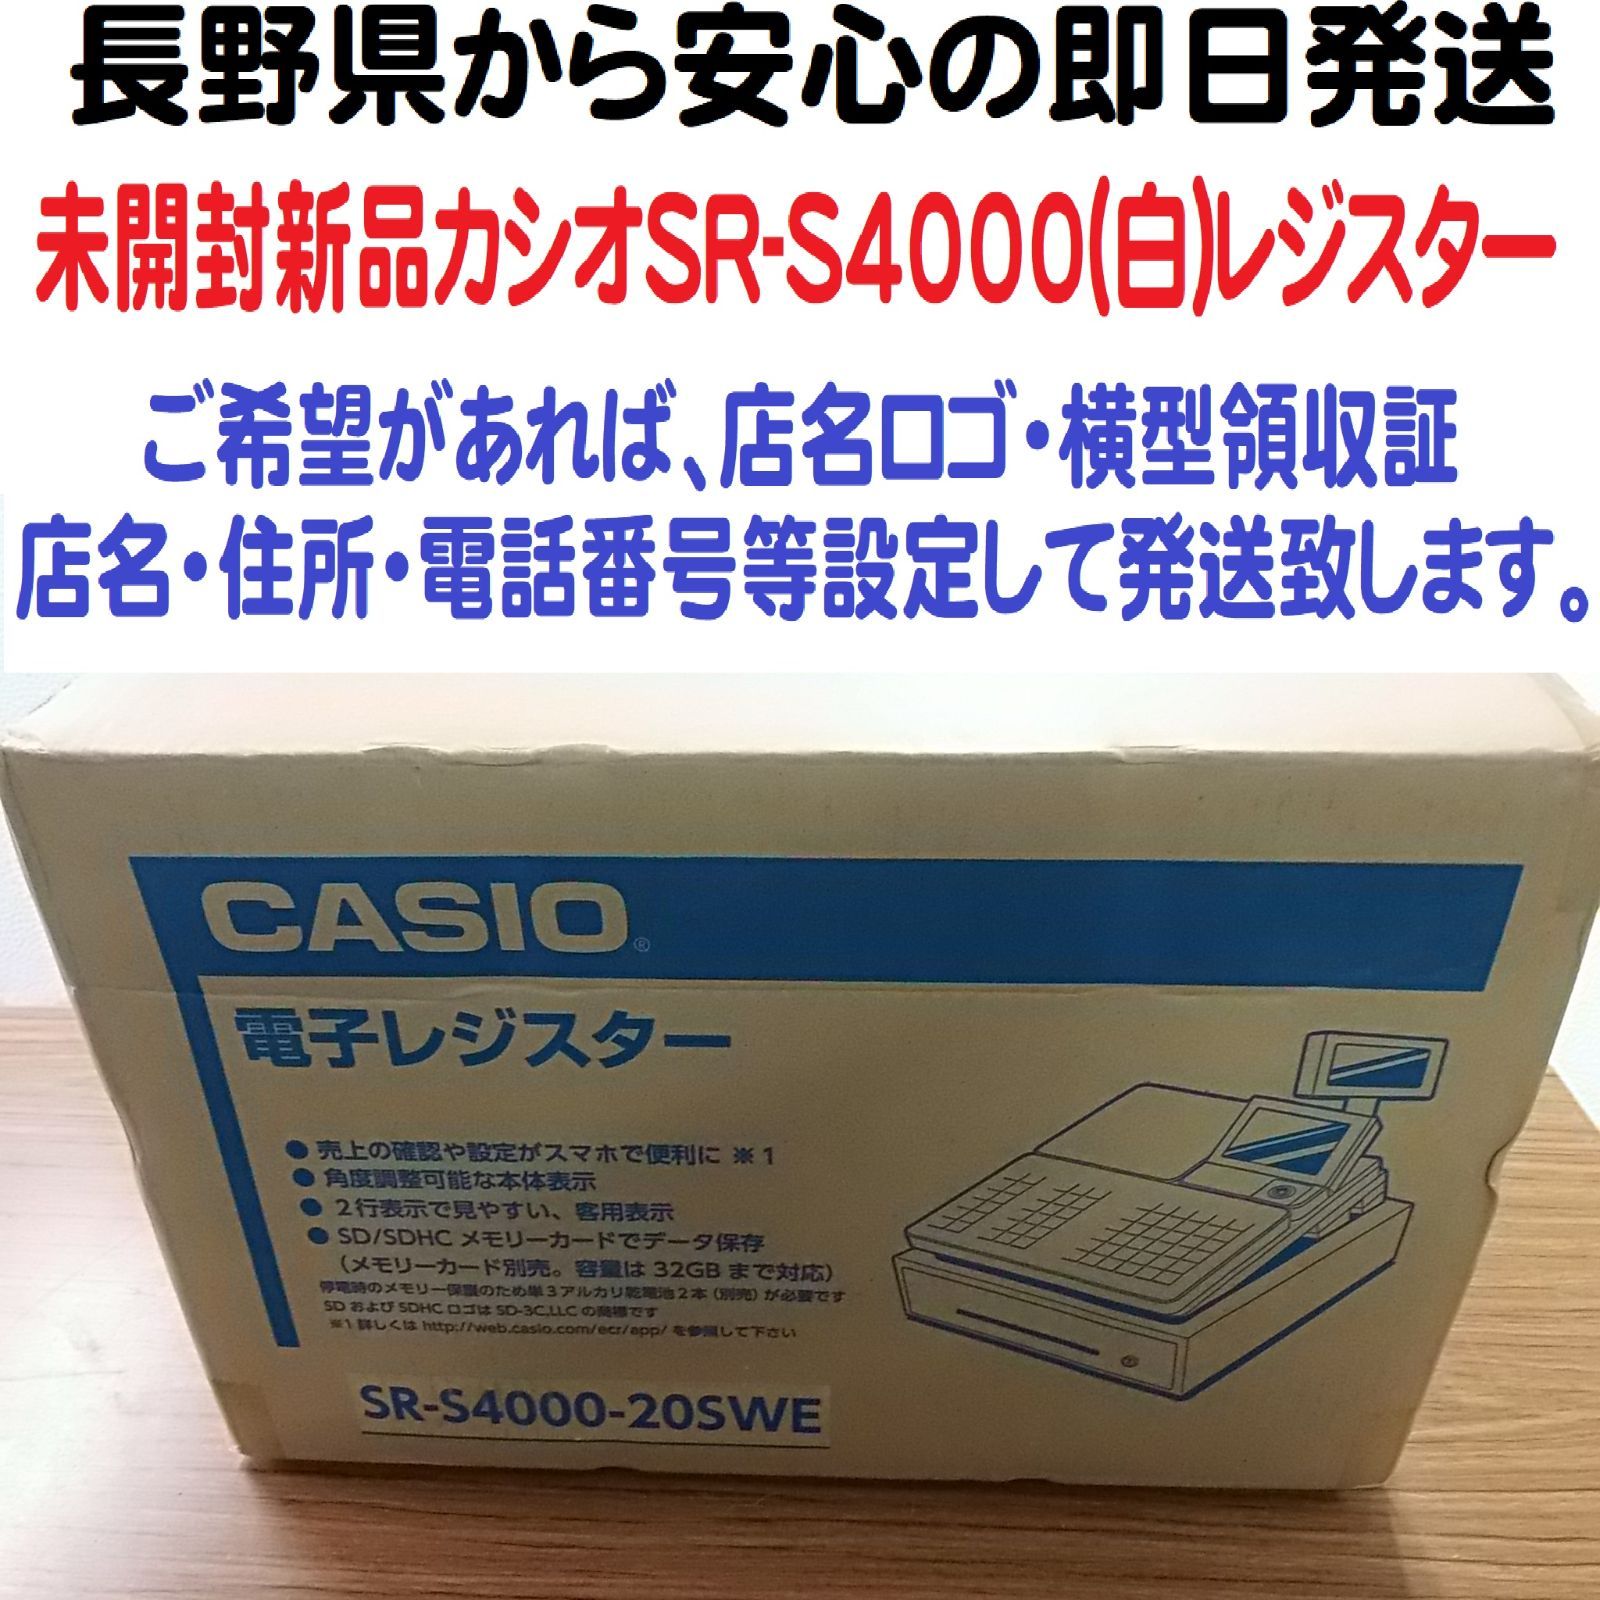 10/6未開封新品 物販向 カシオ SR-S4000 レジスター - メルカリ